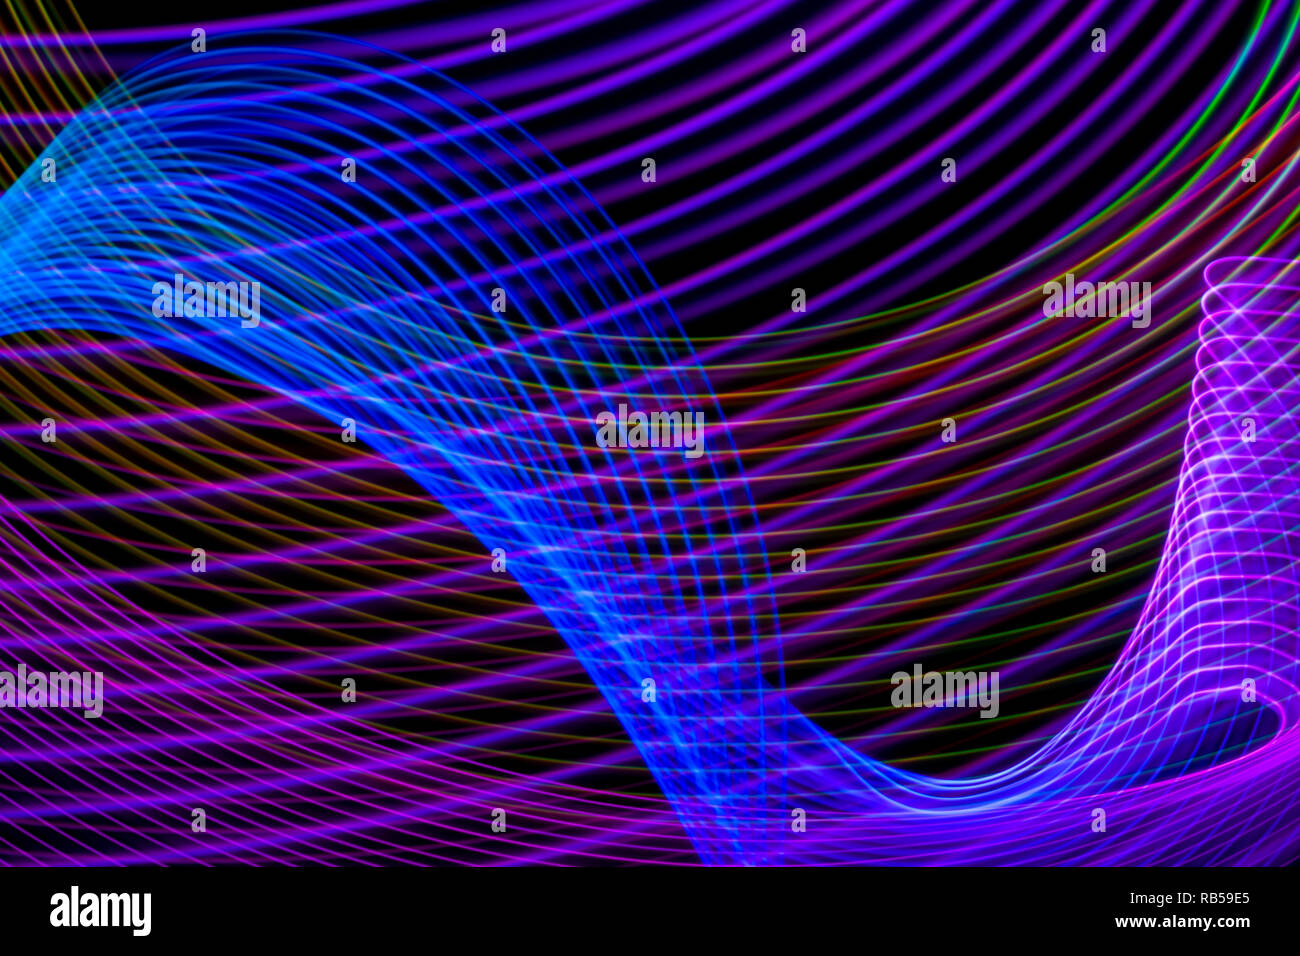 Zusammenfassung Hintergrund In Blau Pink Und Lila Streifen Das Konzept Der Geometrischen Asthetik Stockfotografie Alamy